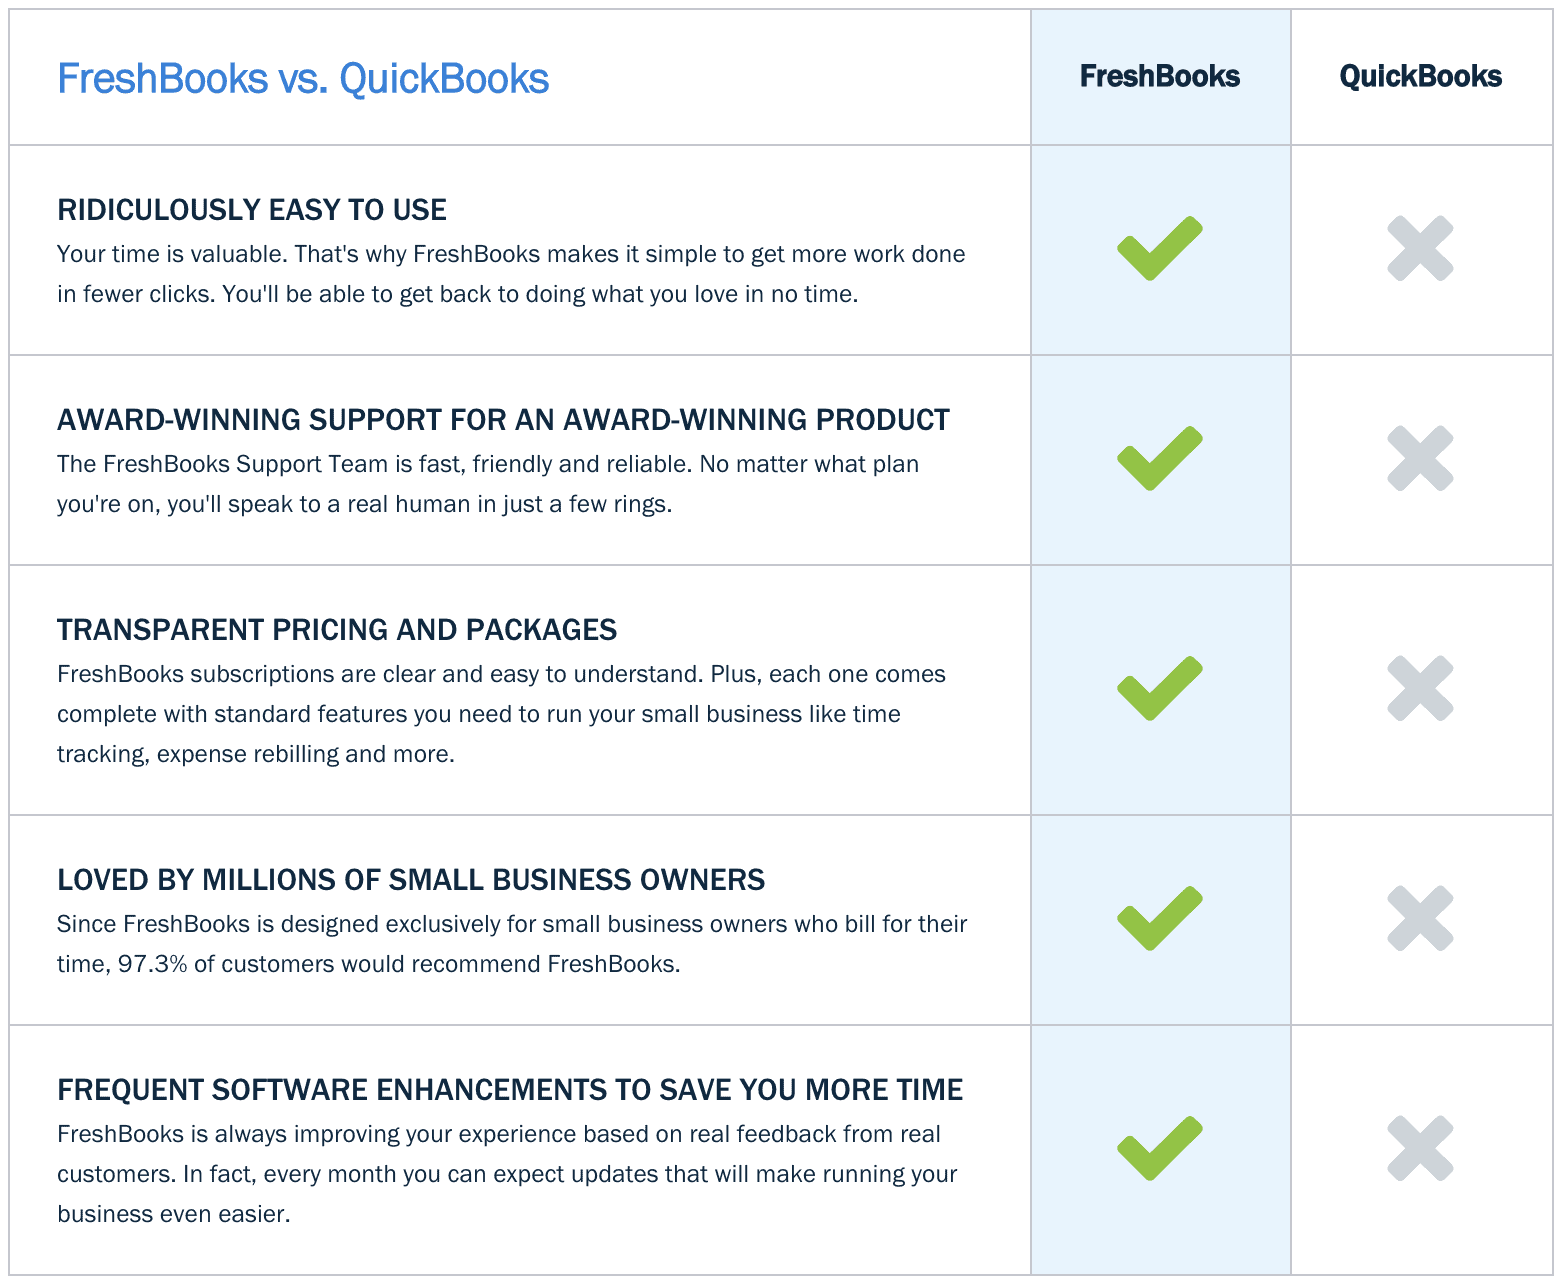 freshbooks vs quickbooks reddit